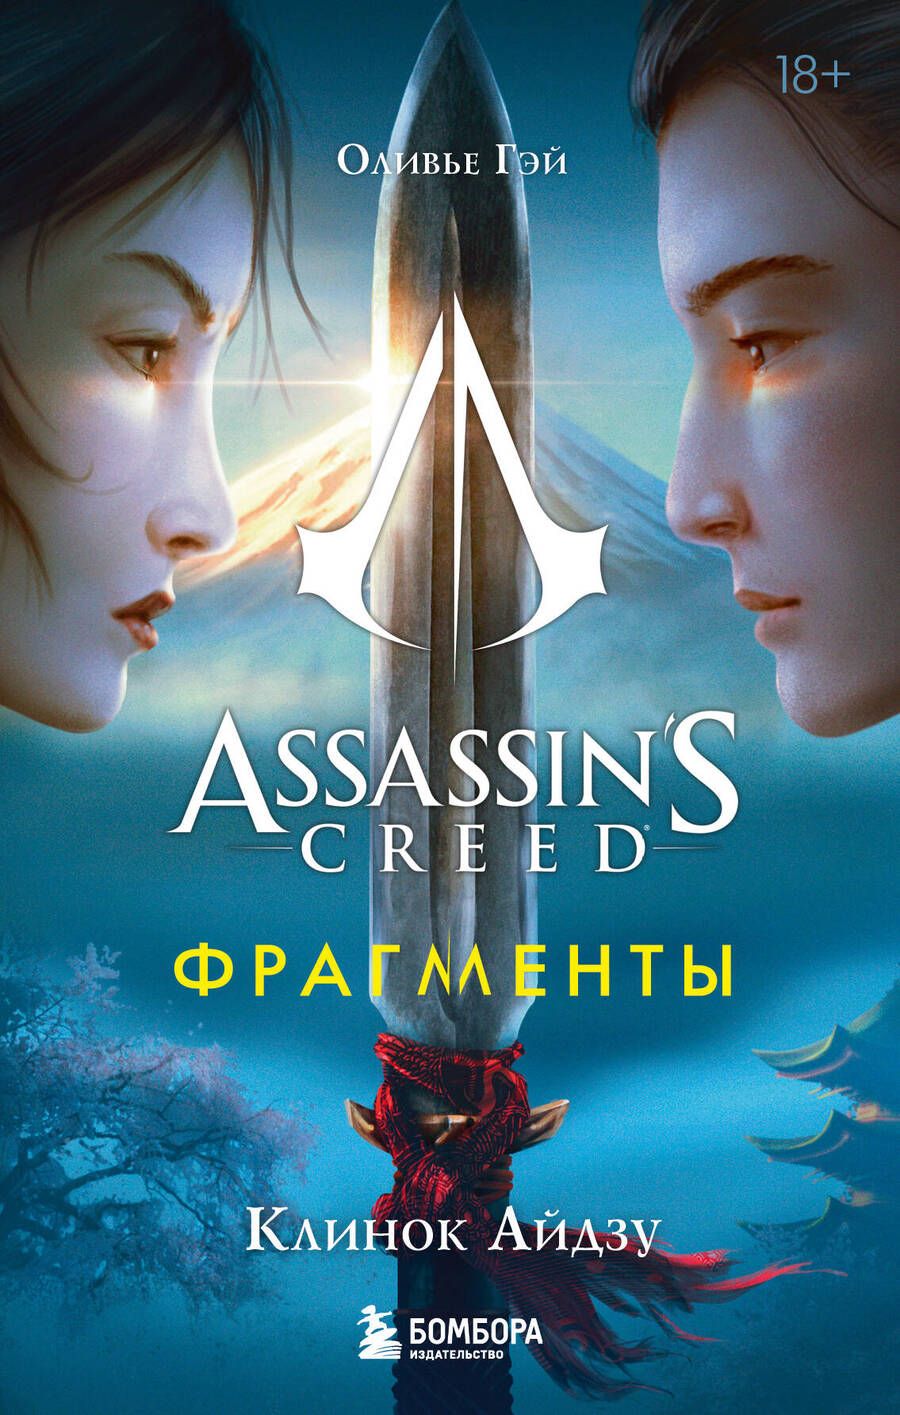 Обложка книги "Гэй: Assassins Creed. Фрагменты. Клинок Айдзу"